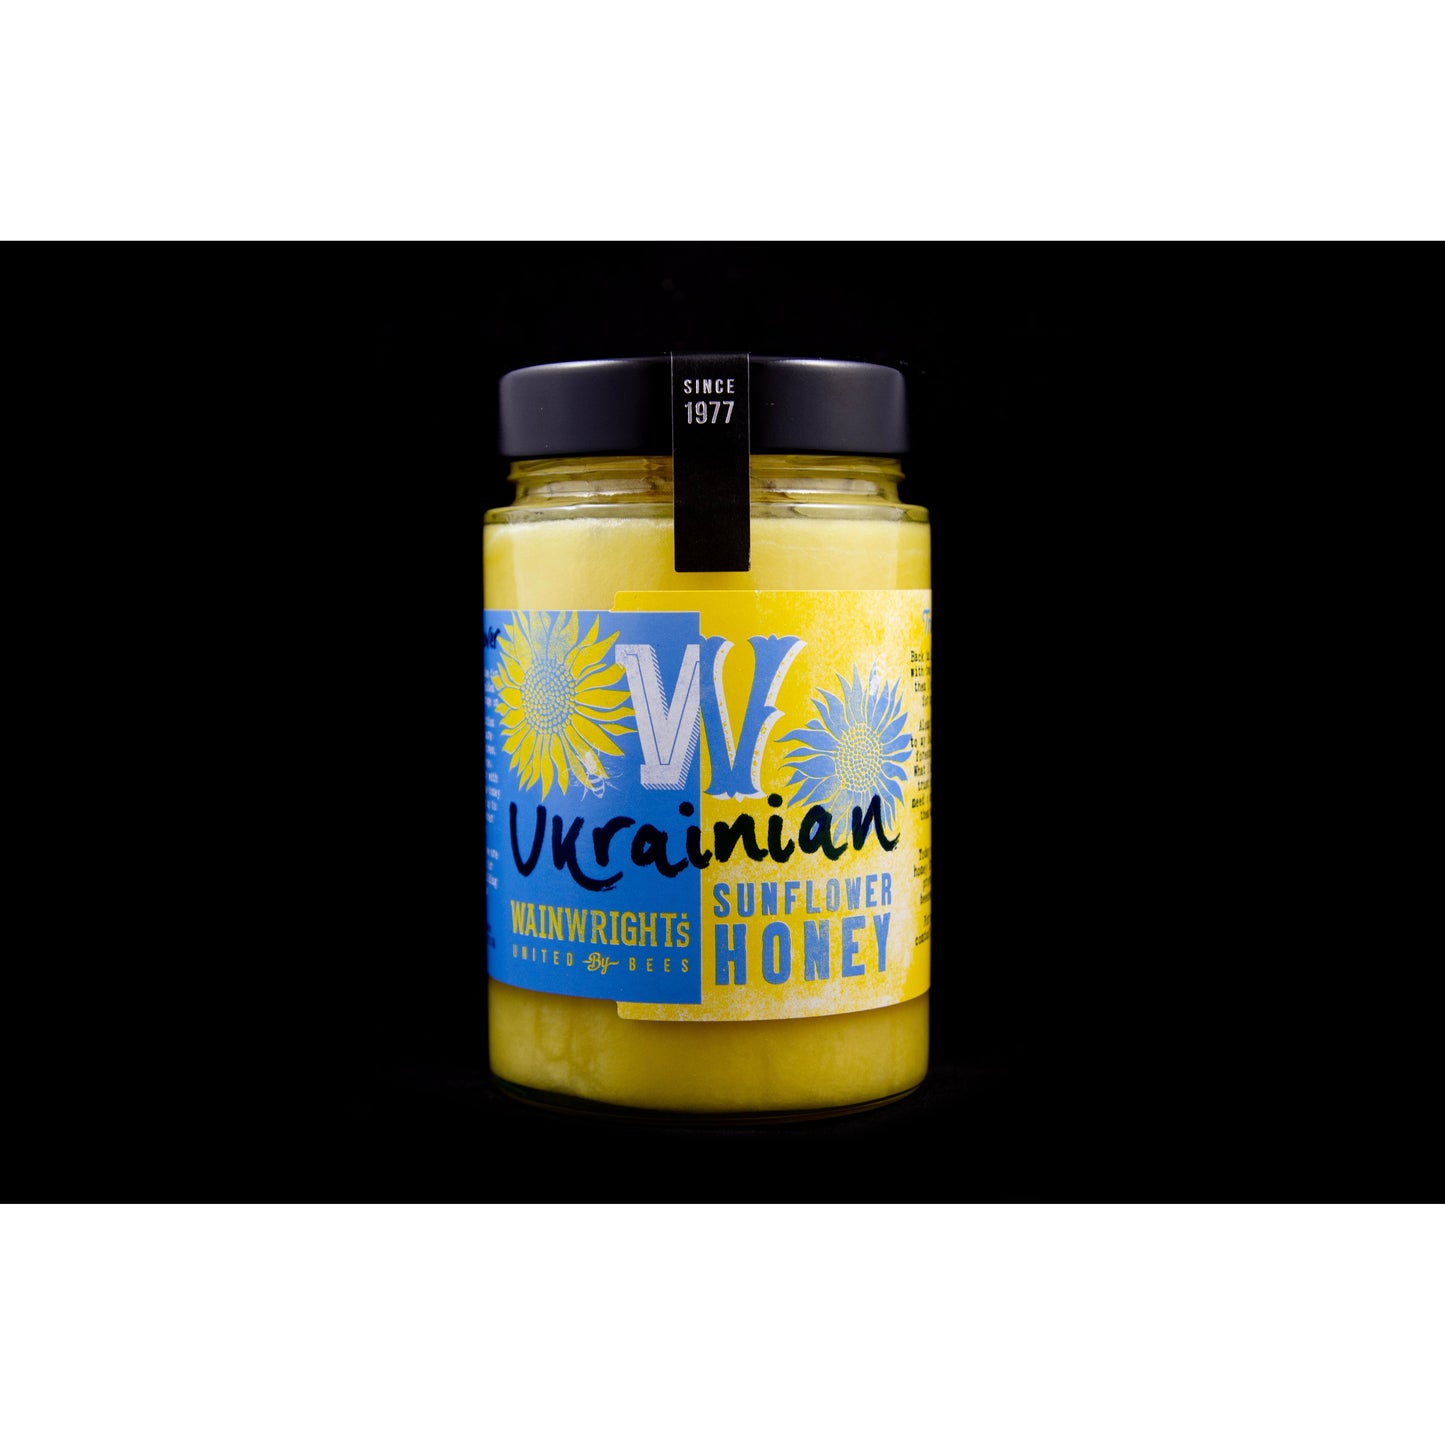 Wainwrights Ukrainian Sunflower Honey